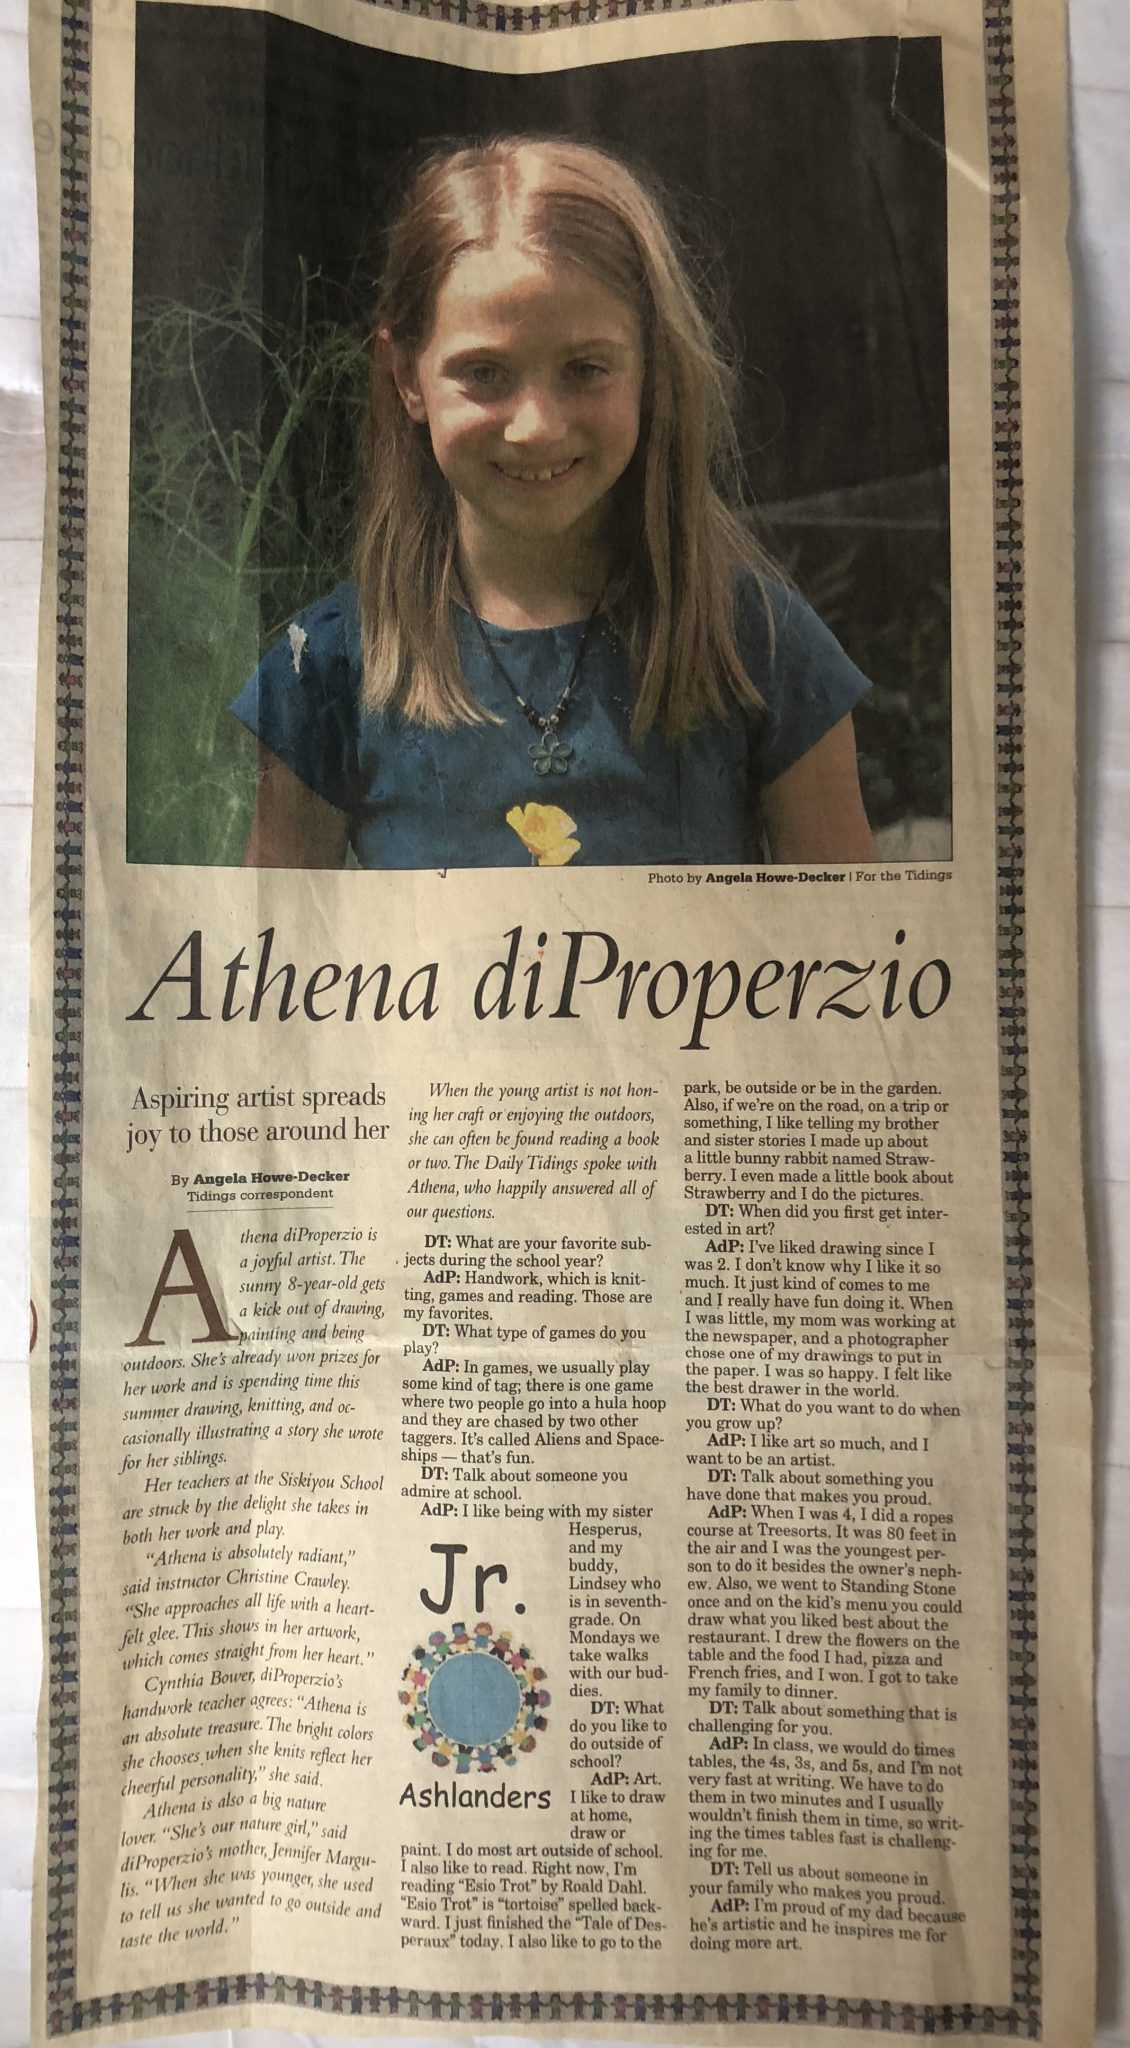 Athena di Properzio, age 8, featured in the Ashland Daily Tidings